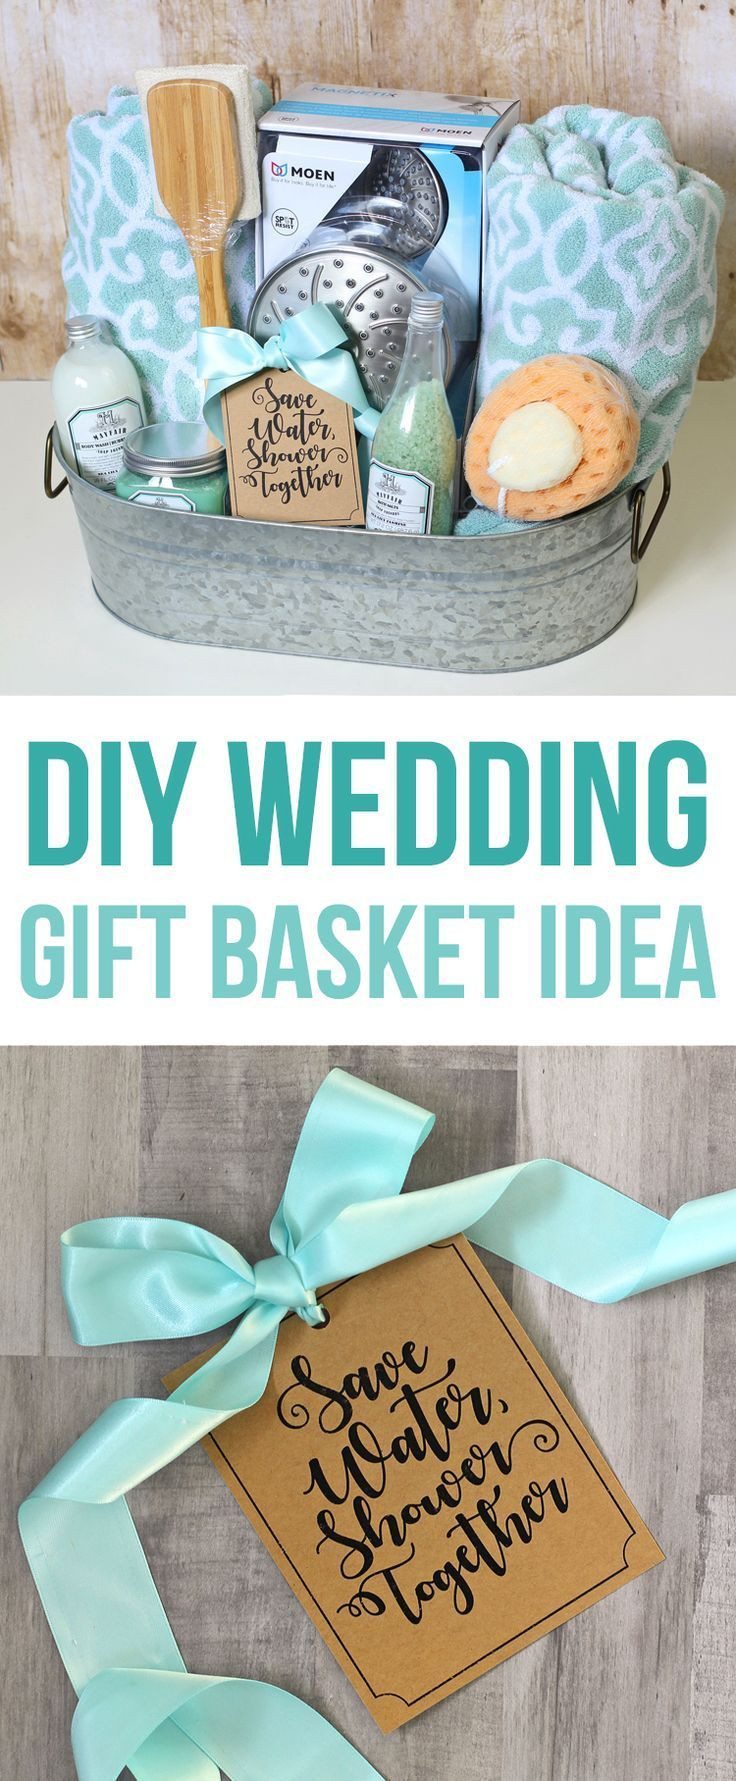 DIY Bath Gift Basket
 Shower Themed DIY Wedding Gift Basket Idea